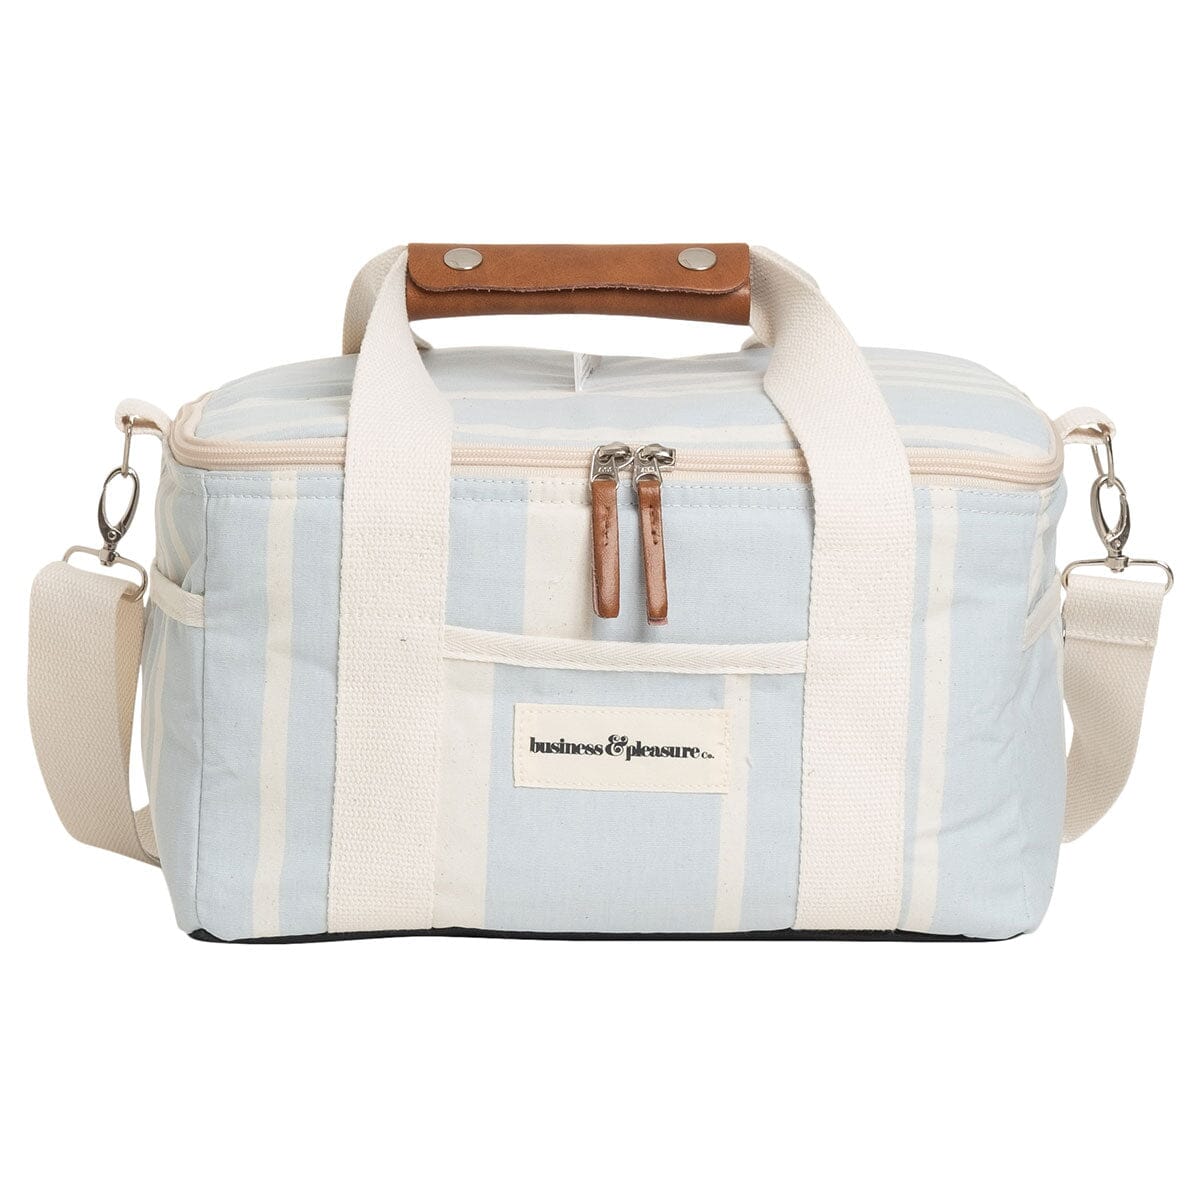 The Premium Cooler Bag - Vintage Blue Stripe